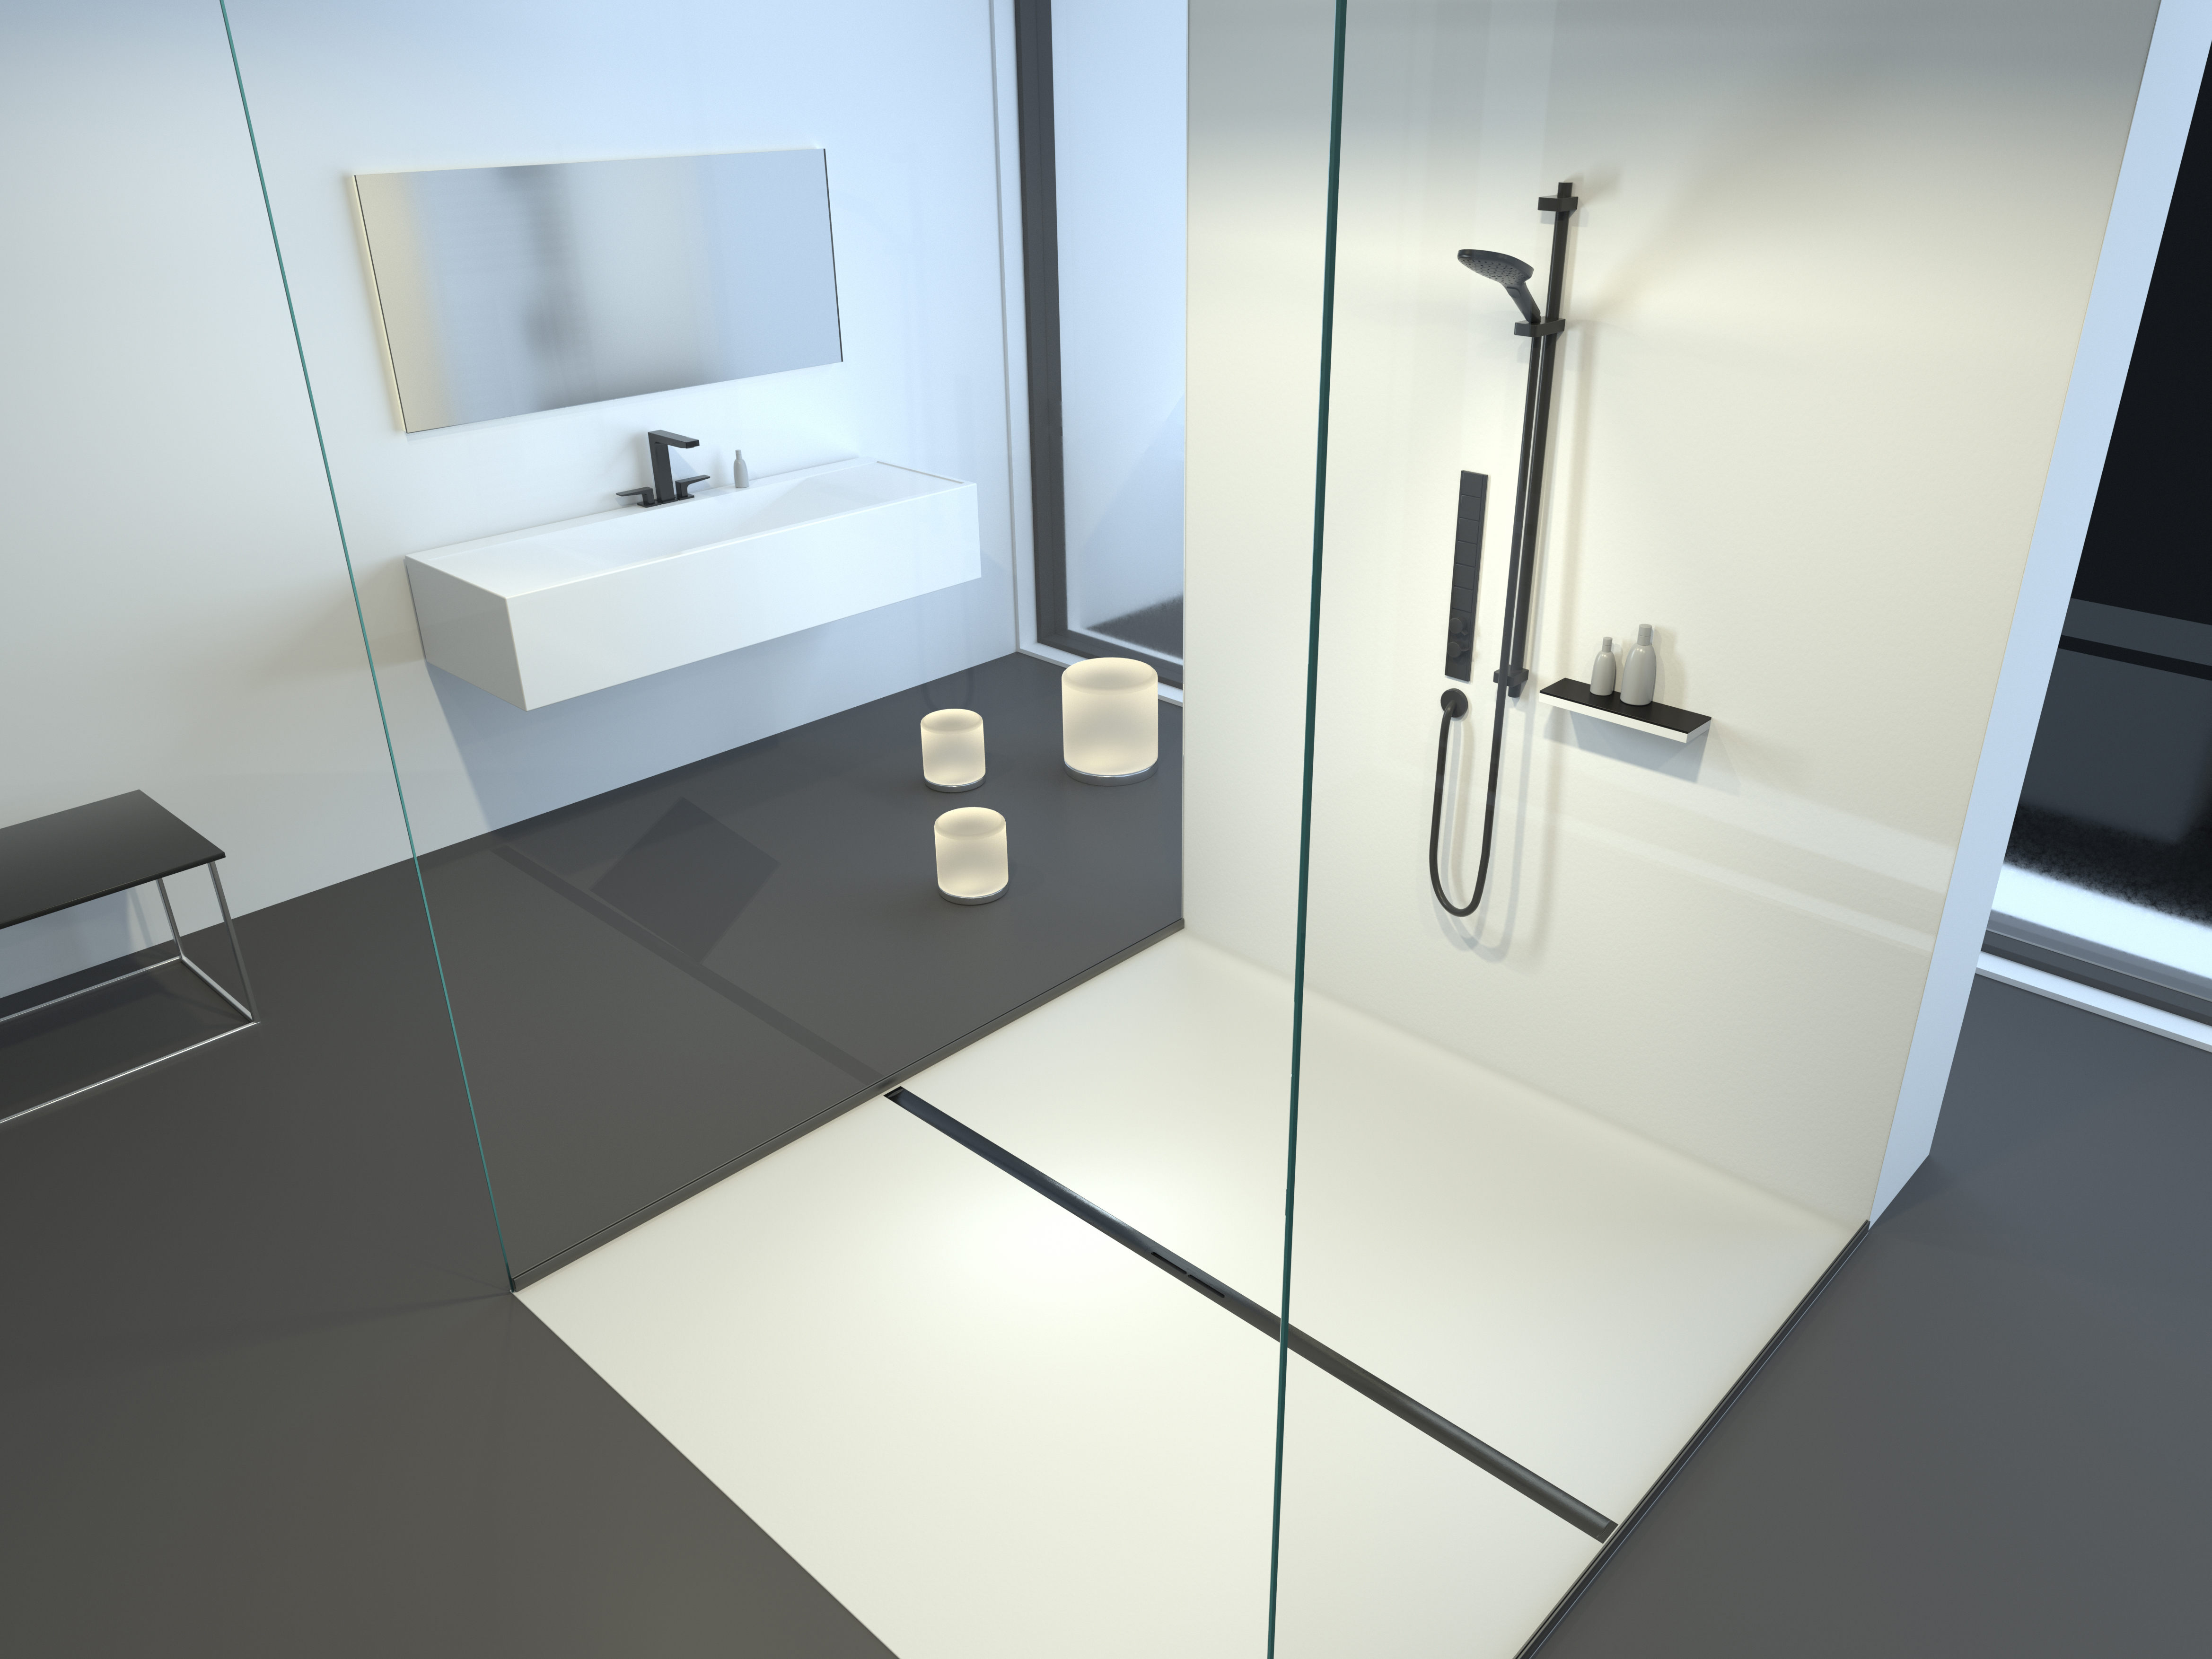 Schéma de montage du caniveau de douche Linearis Infinity, surface Black brossé, dans une salle de bains